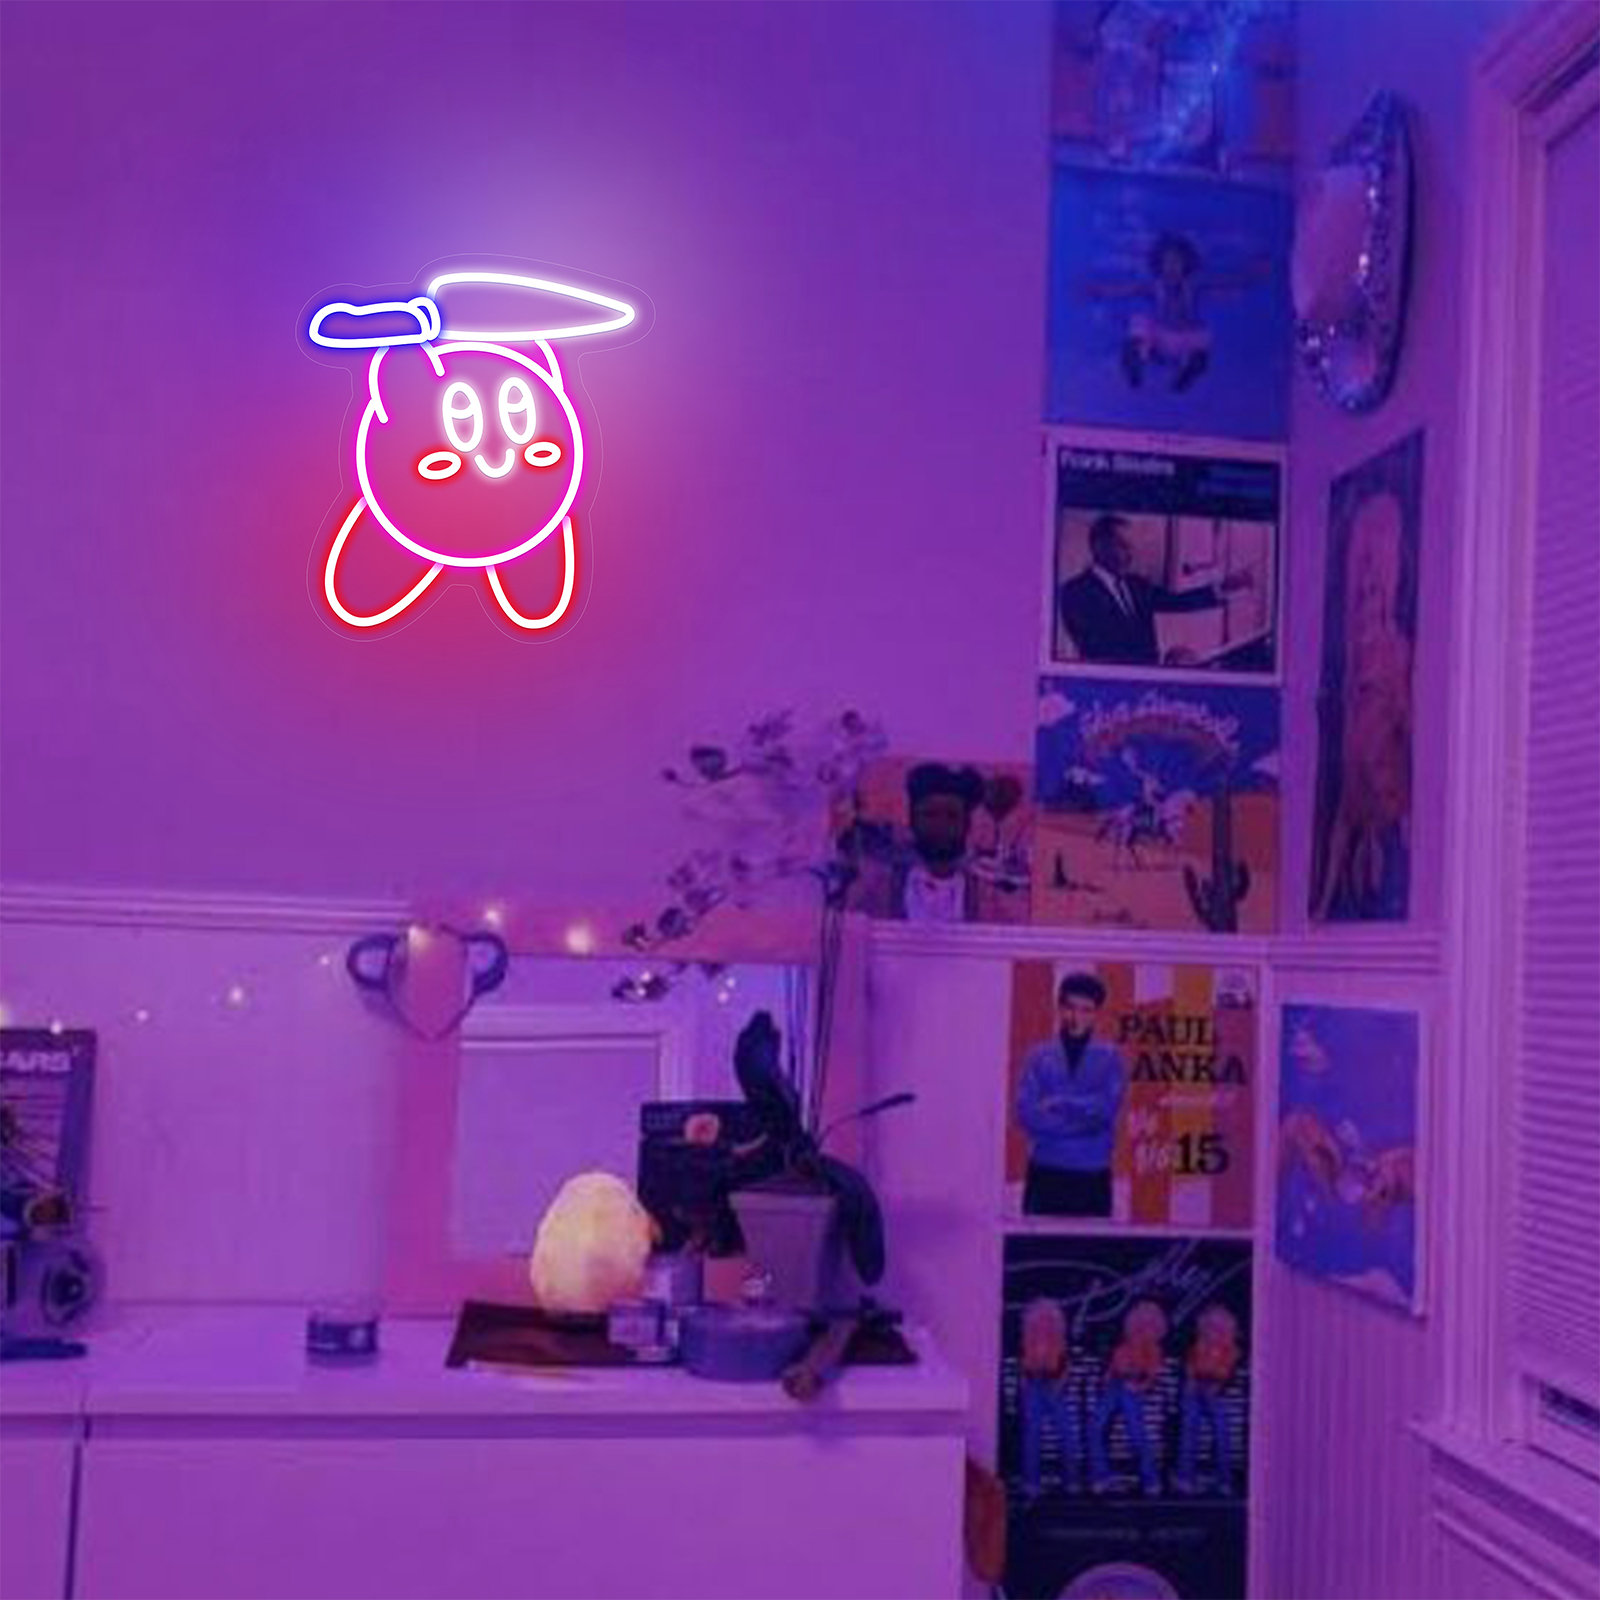 ANIME KID GOKU LED LIGHTS NEON SIGN Game Room Wall Decor HOME GIFT ART  CLOUD BAR | eBay